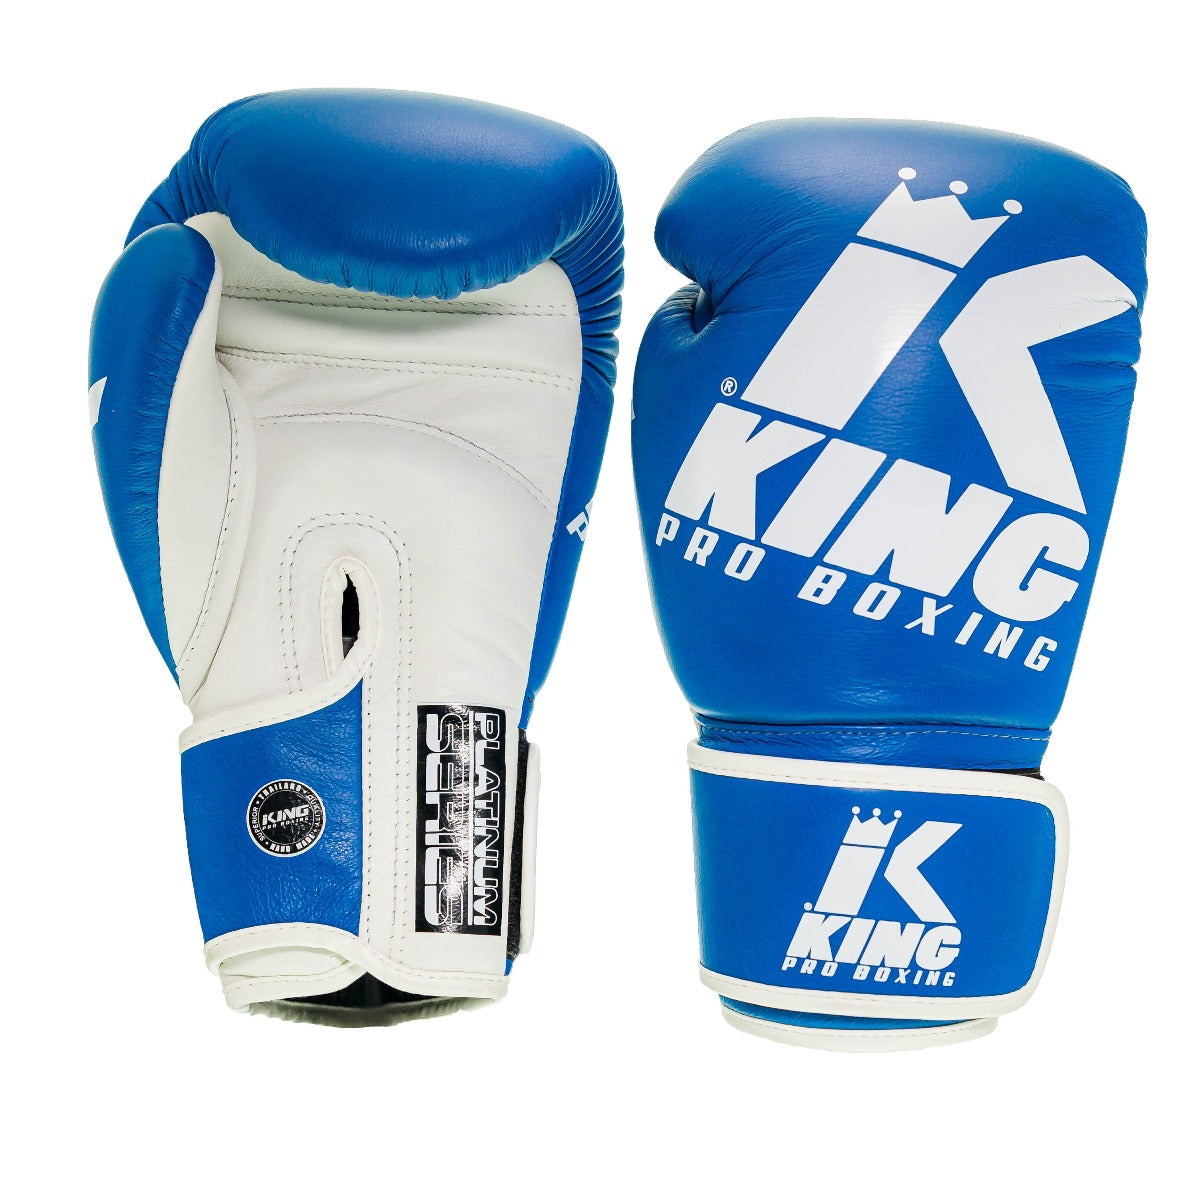 Gants de boxe King PRO boxing - BG PLATINUM 2